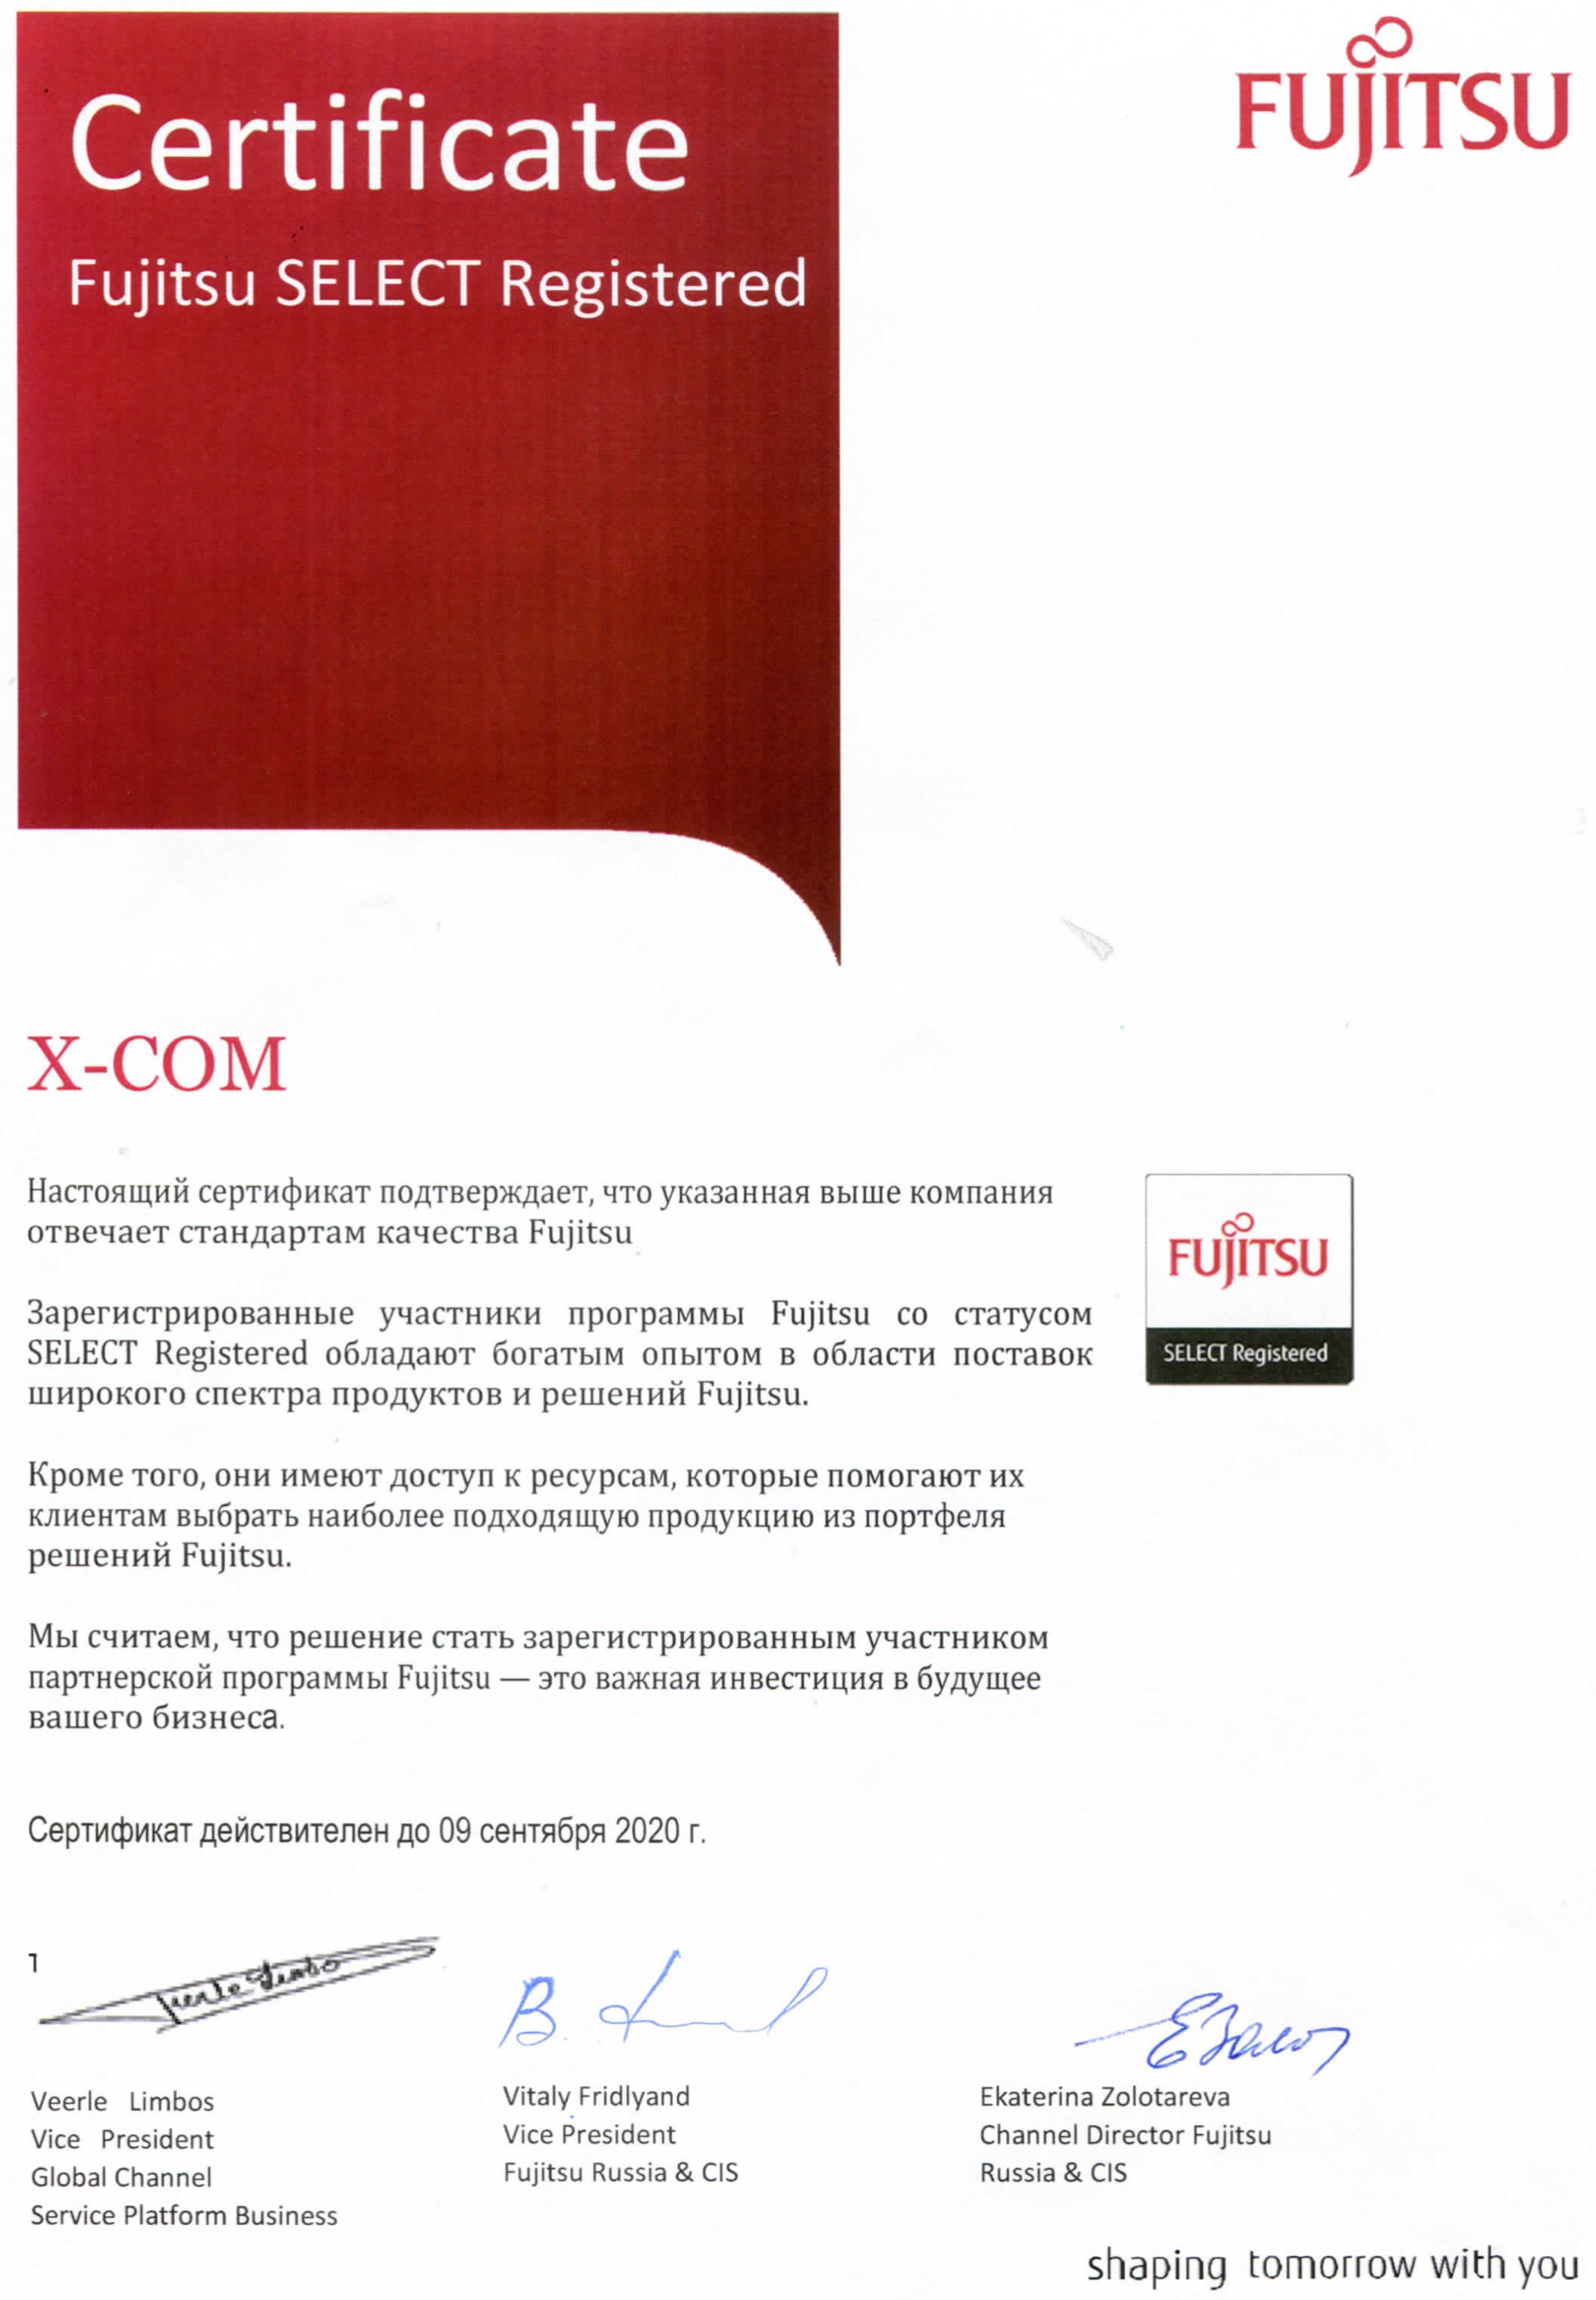 X-Com подтвердила партнёрский статус Fujitsu